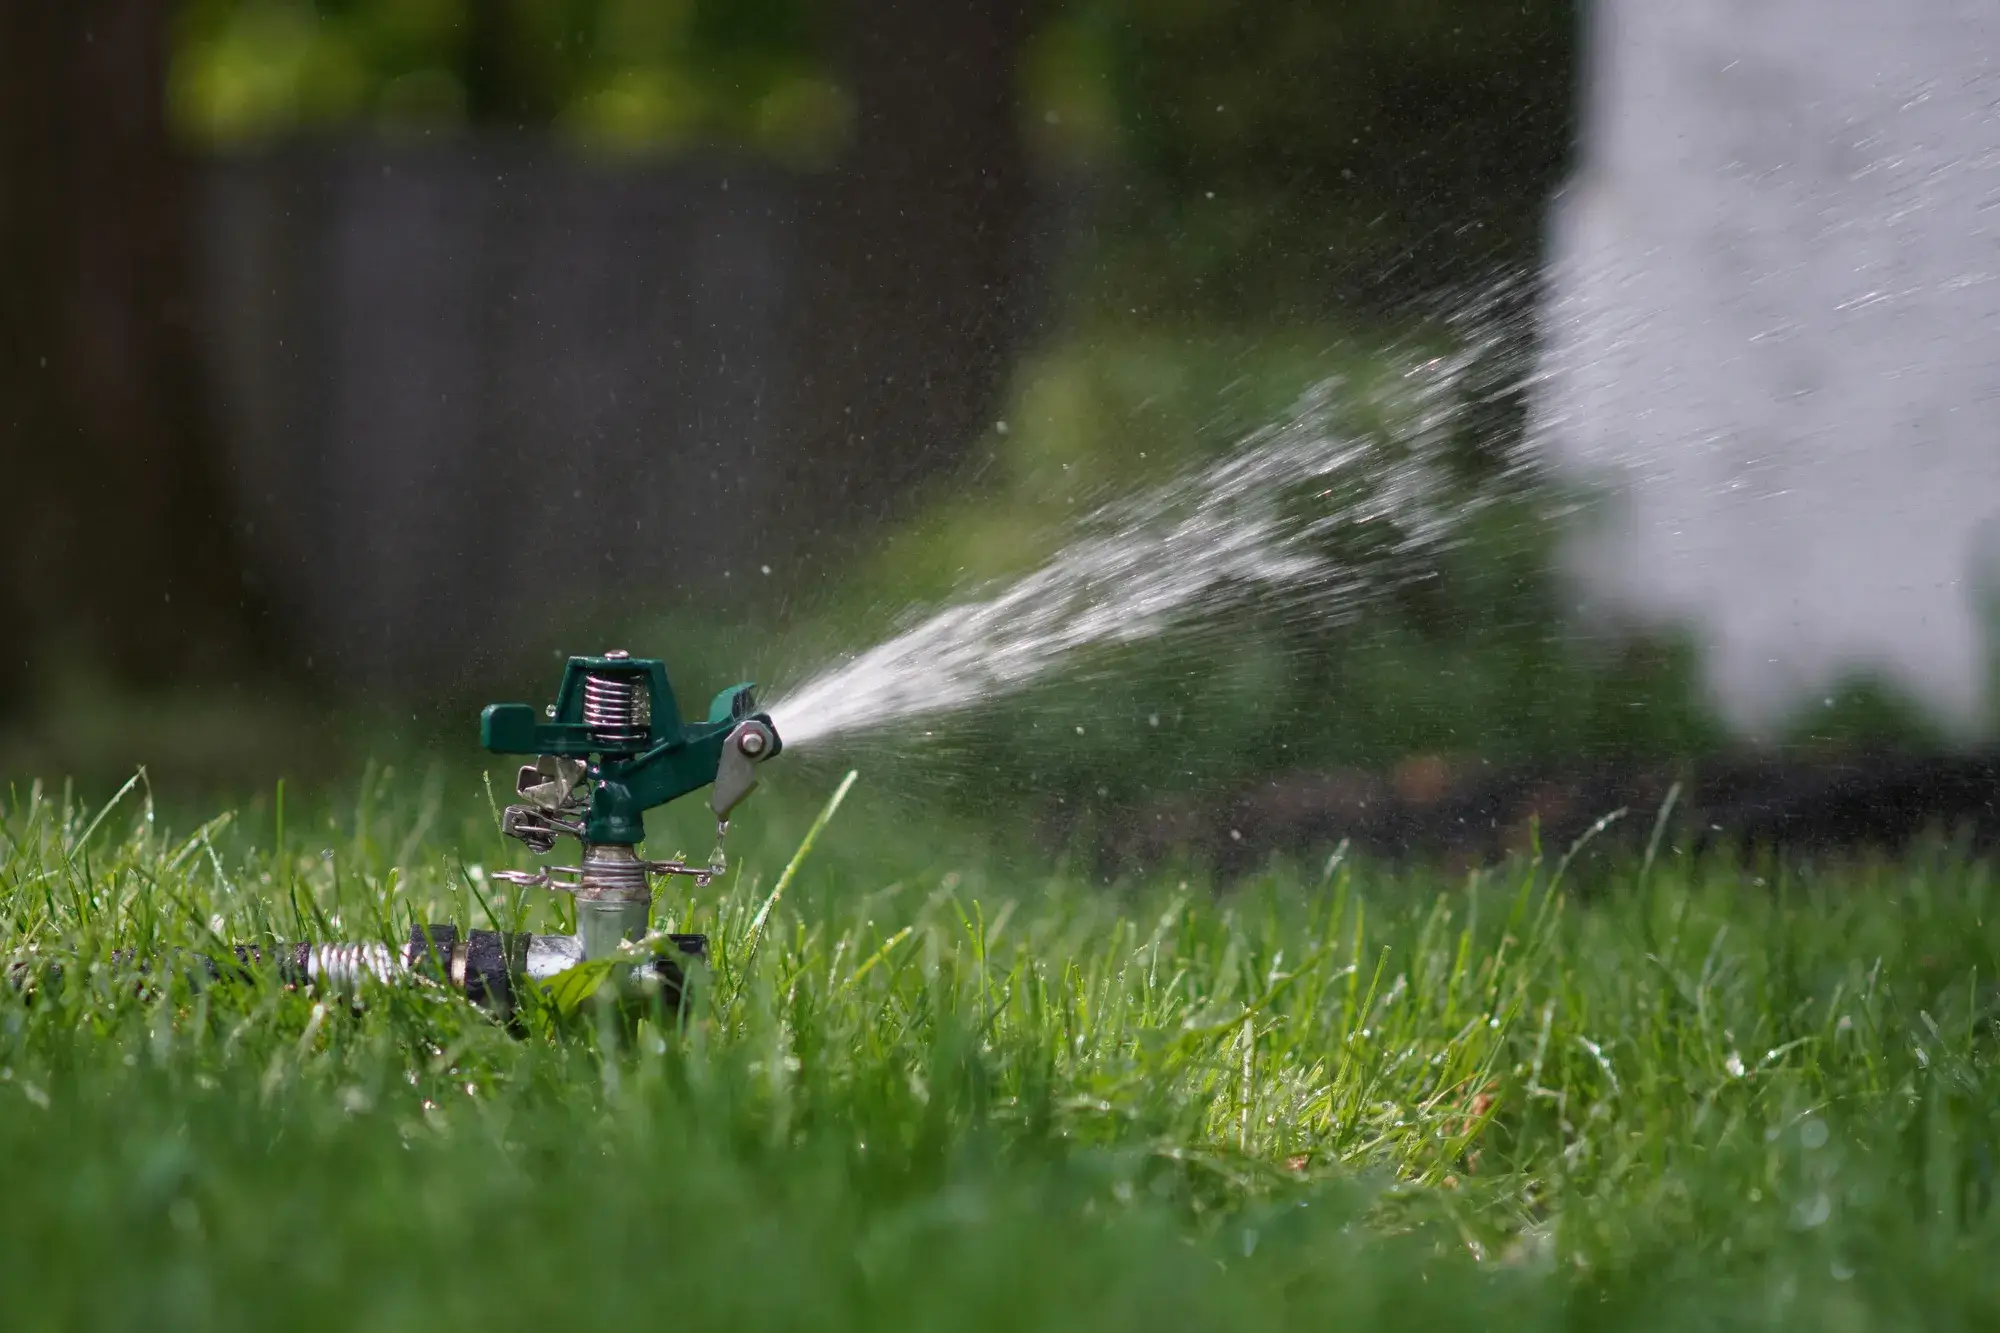 Ook tijdens afwezigheid kun je door middel van automatisch berekenen je grasveld gezond houden.